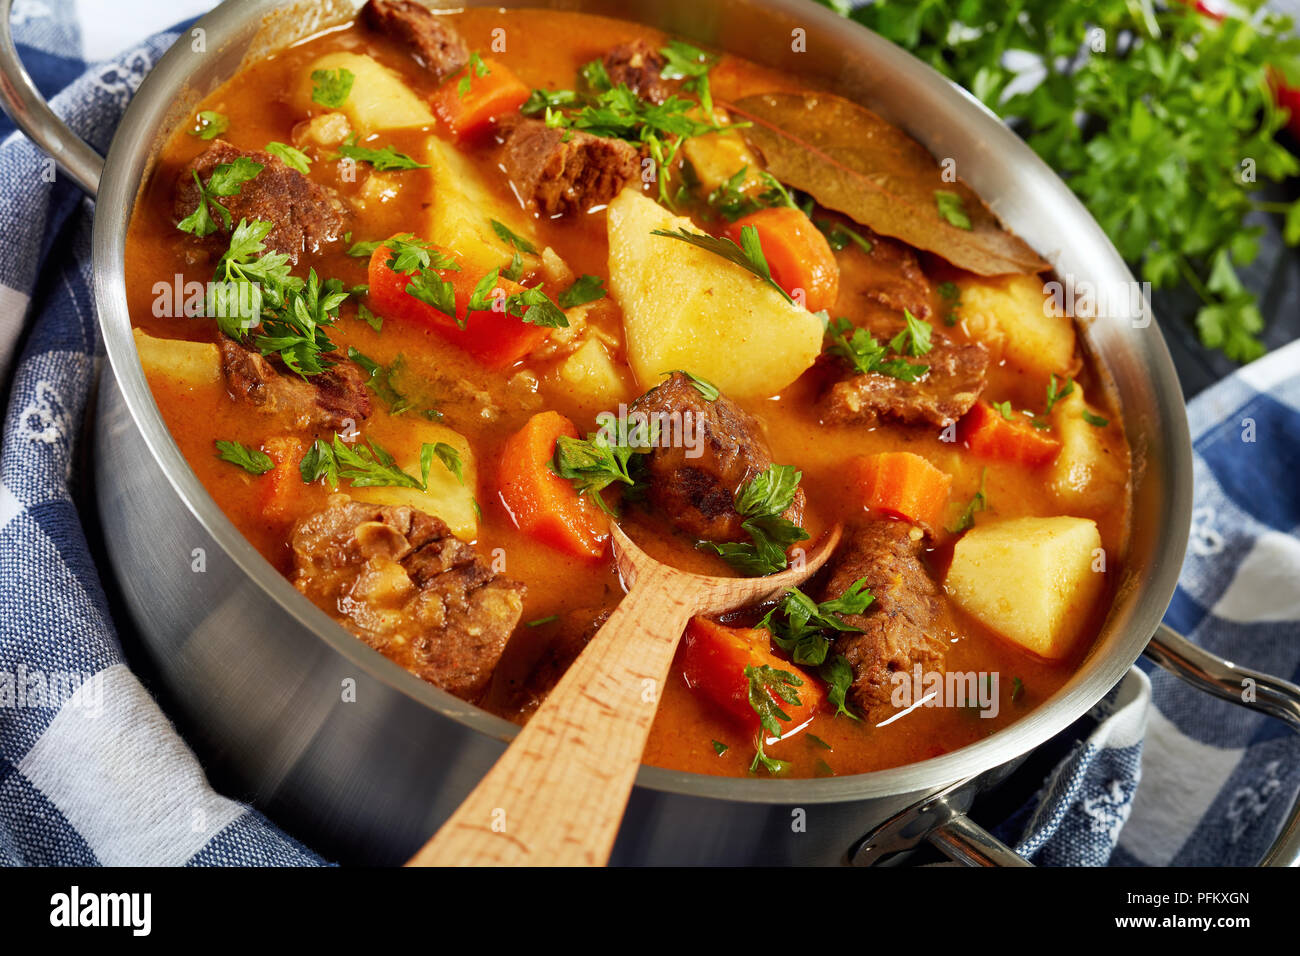 Ragoût de boeuf aux légumes dans une sauce épicée ou estofado de carne dans  une casserole de métal avec une cuillère de bois, recette authentique, vue  de dessus, close-up Photo Stock -